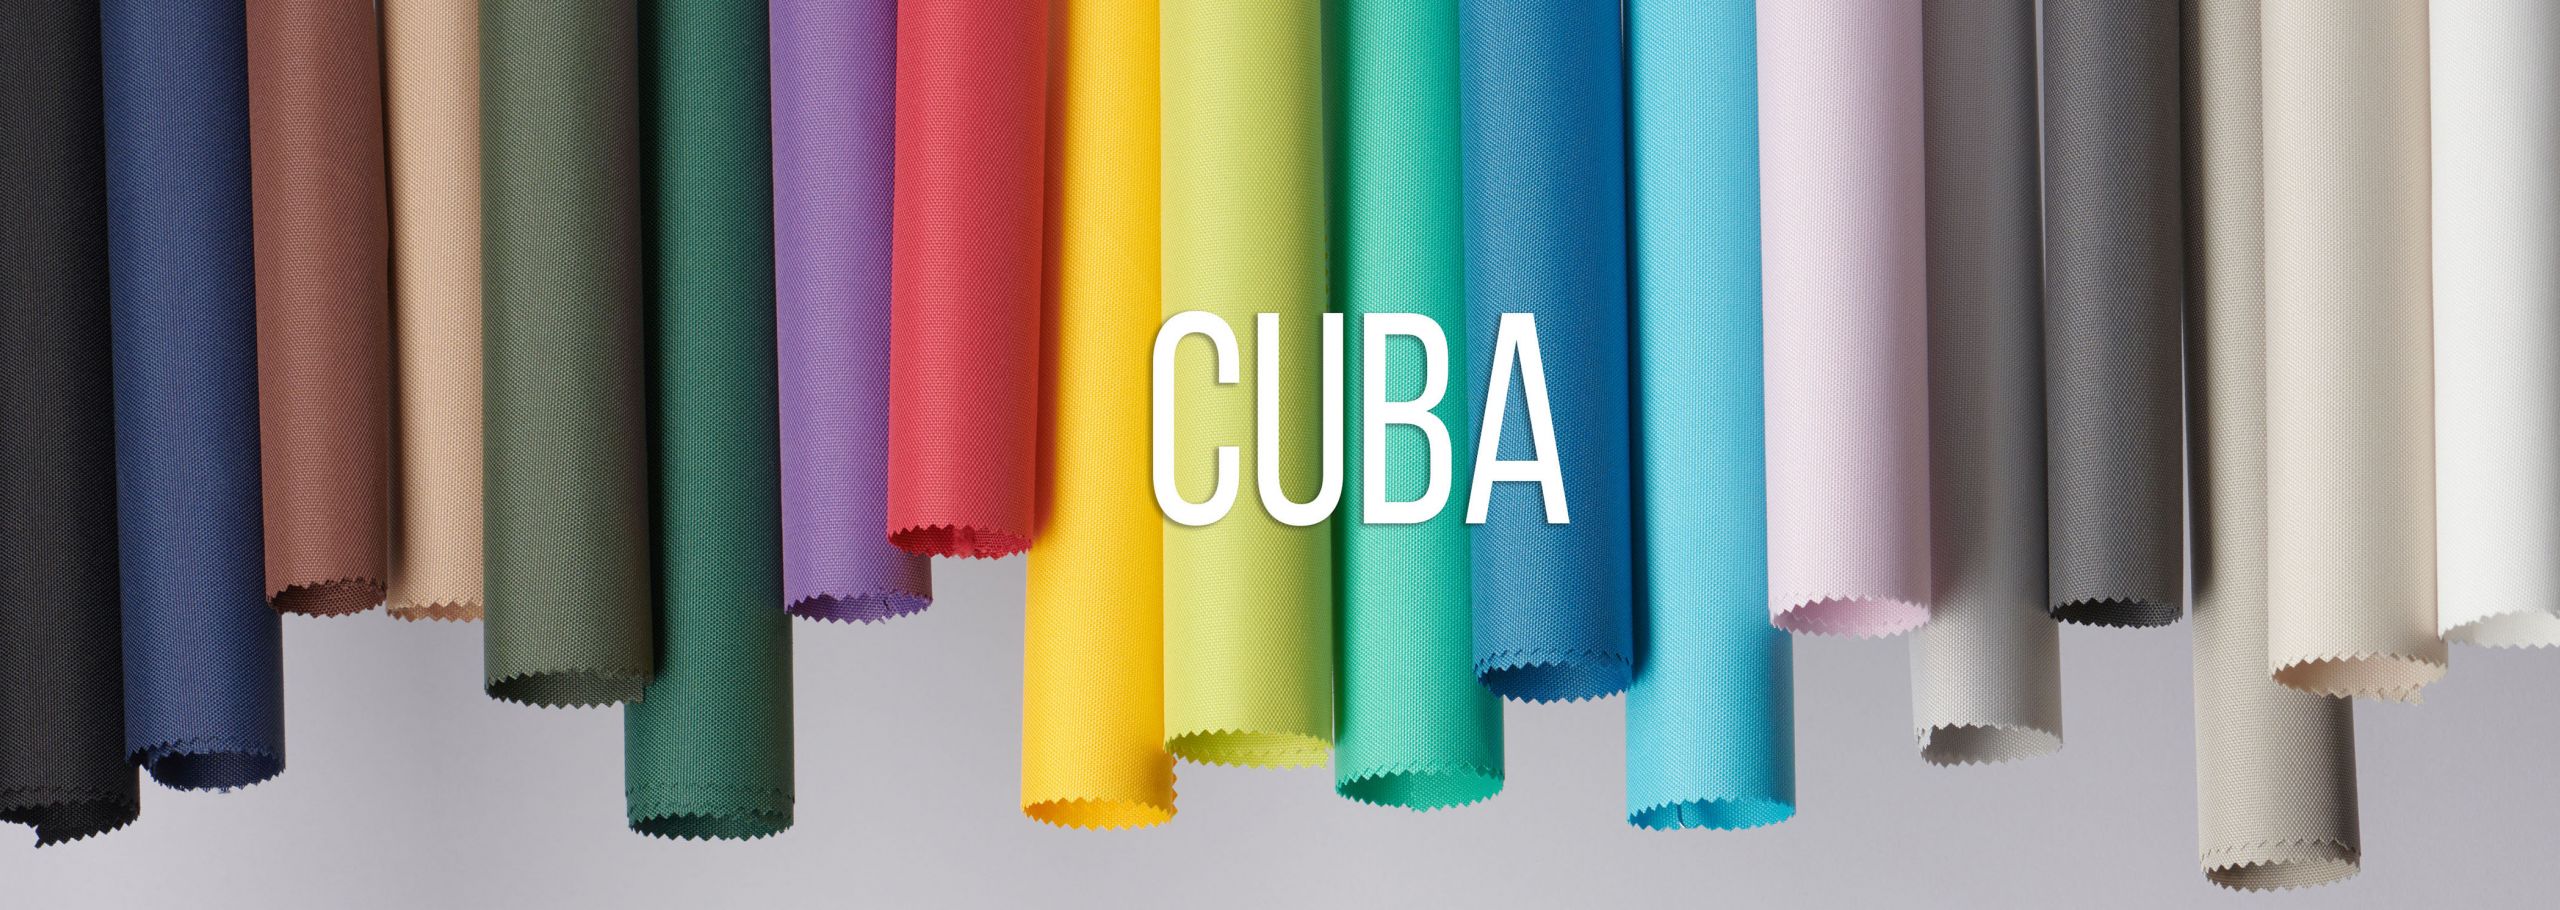 Banner Cuba